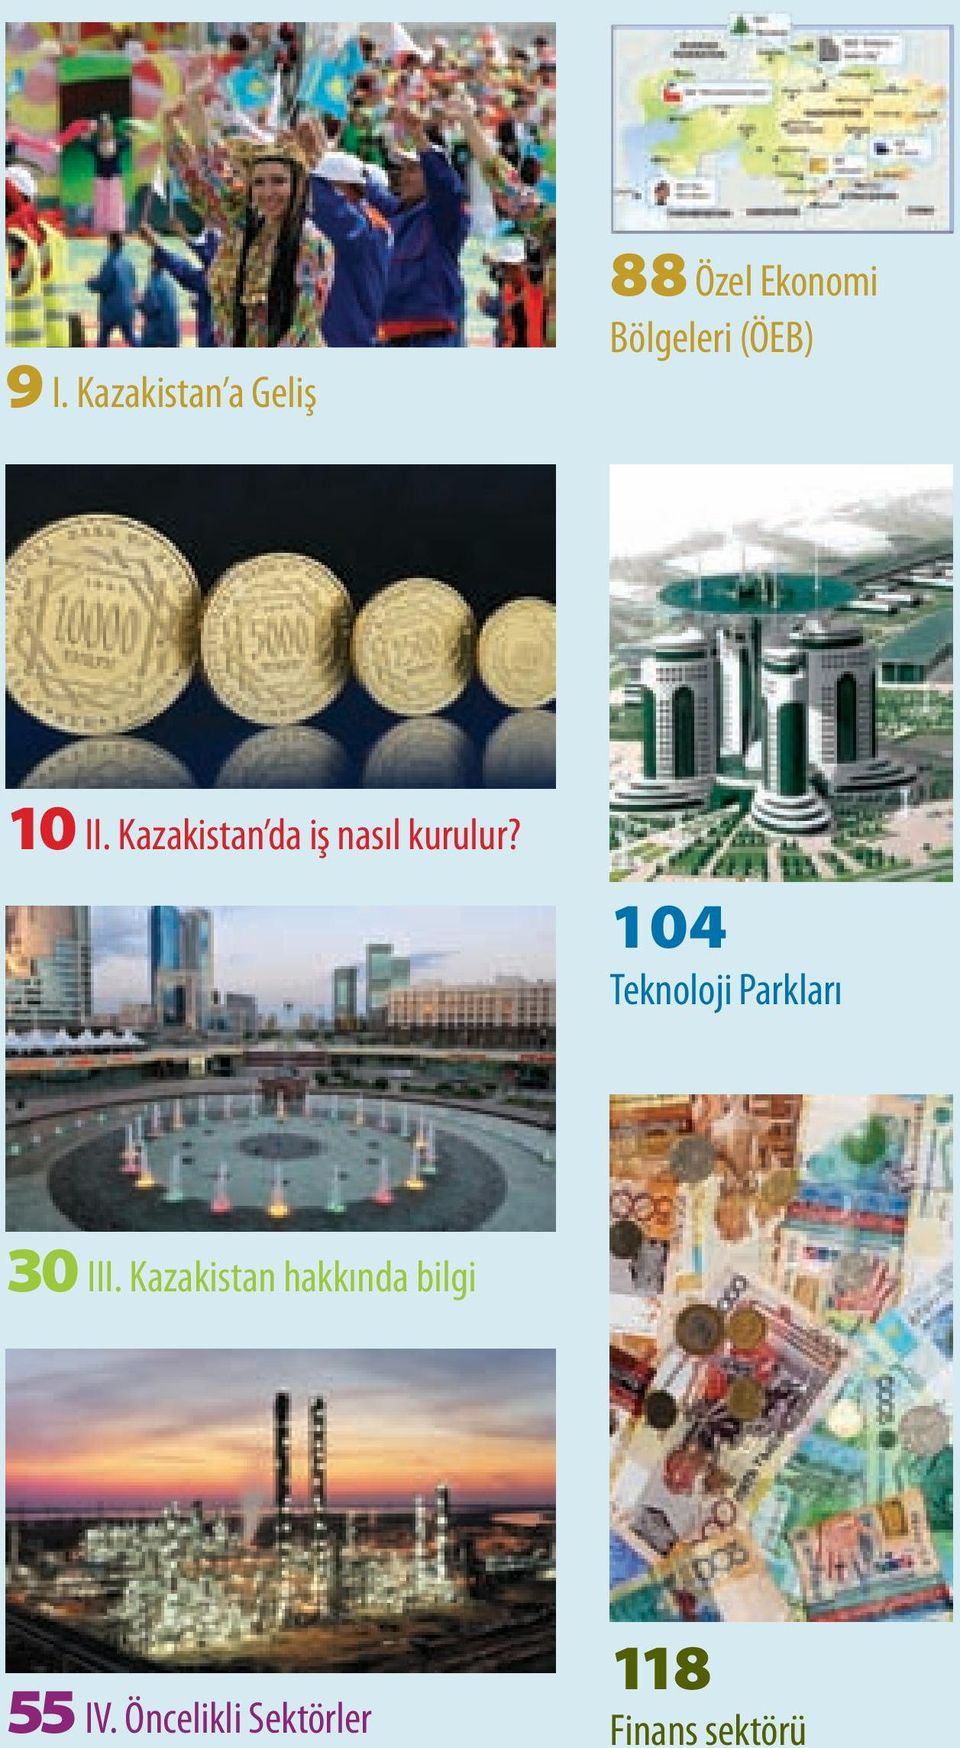 II. Kazakistan da iş nasıl kurulur?